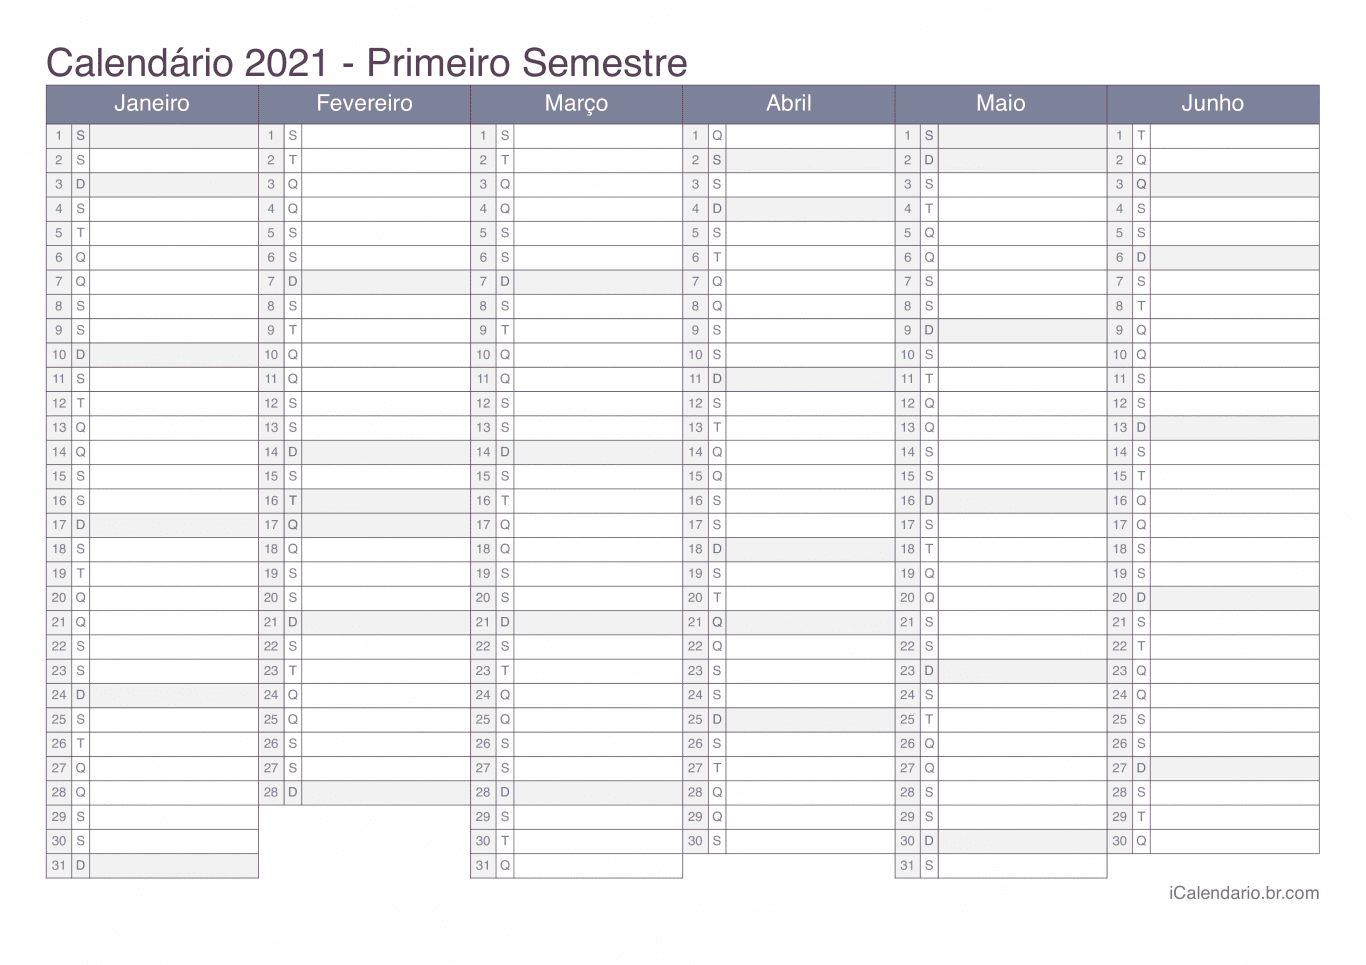 Calendário por semestre 2021 - Office